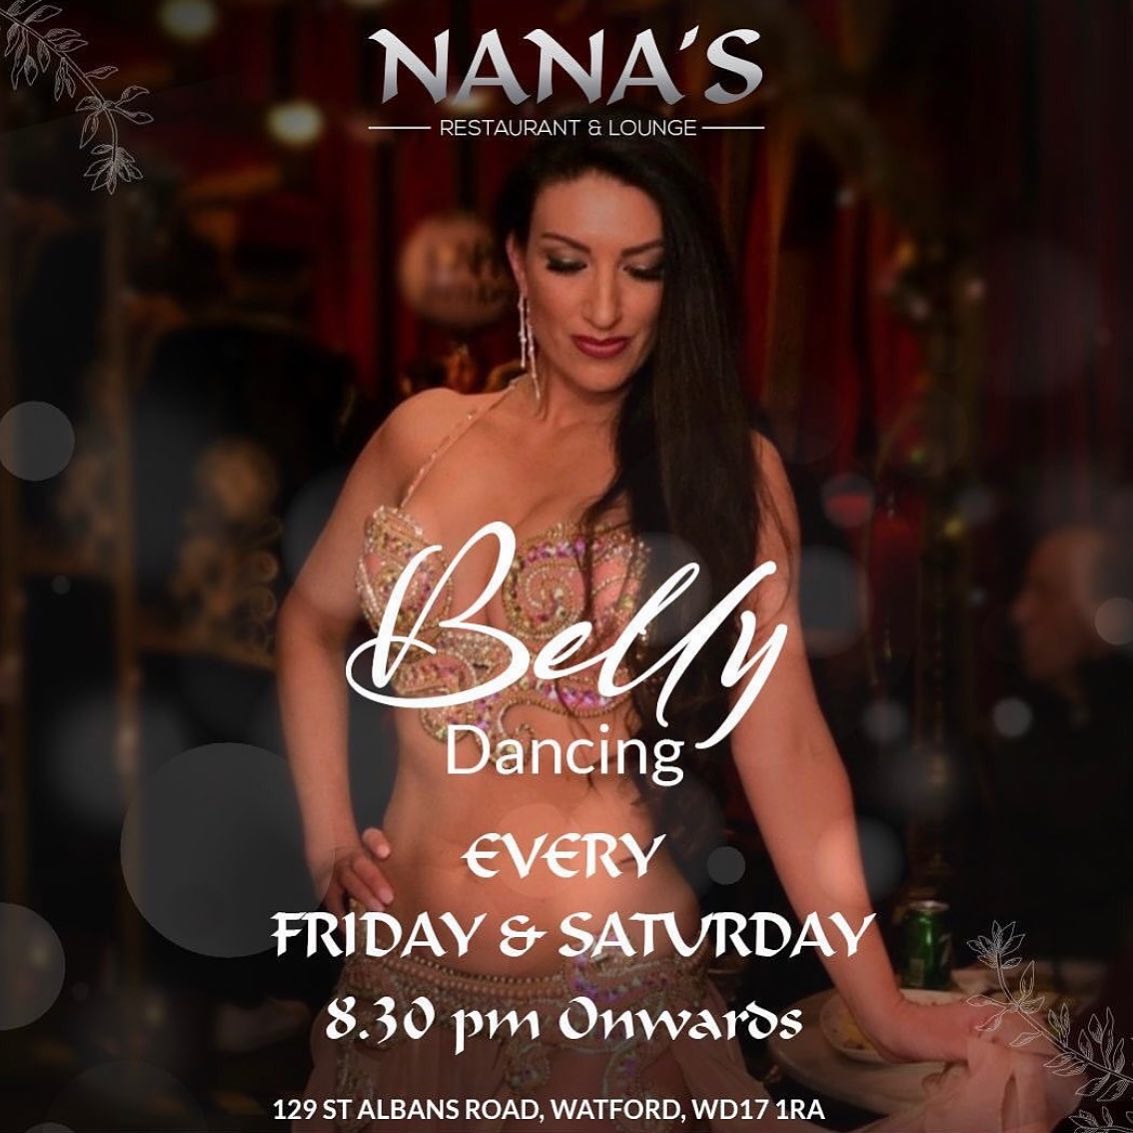 Nana's Restaurant & Lounge